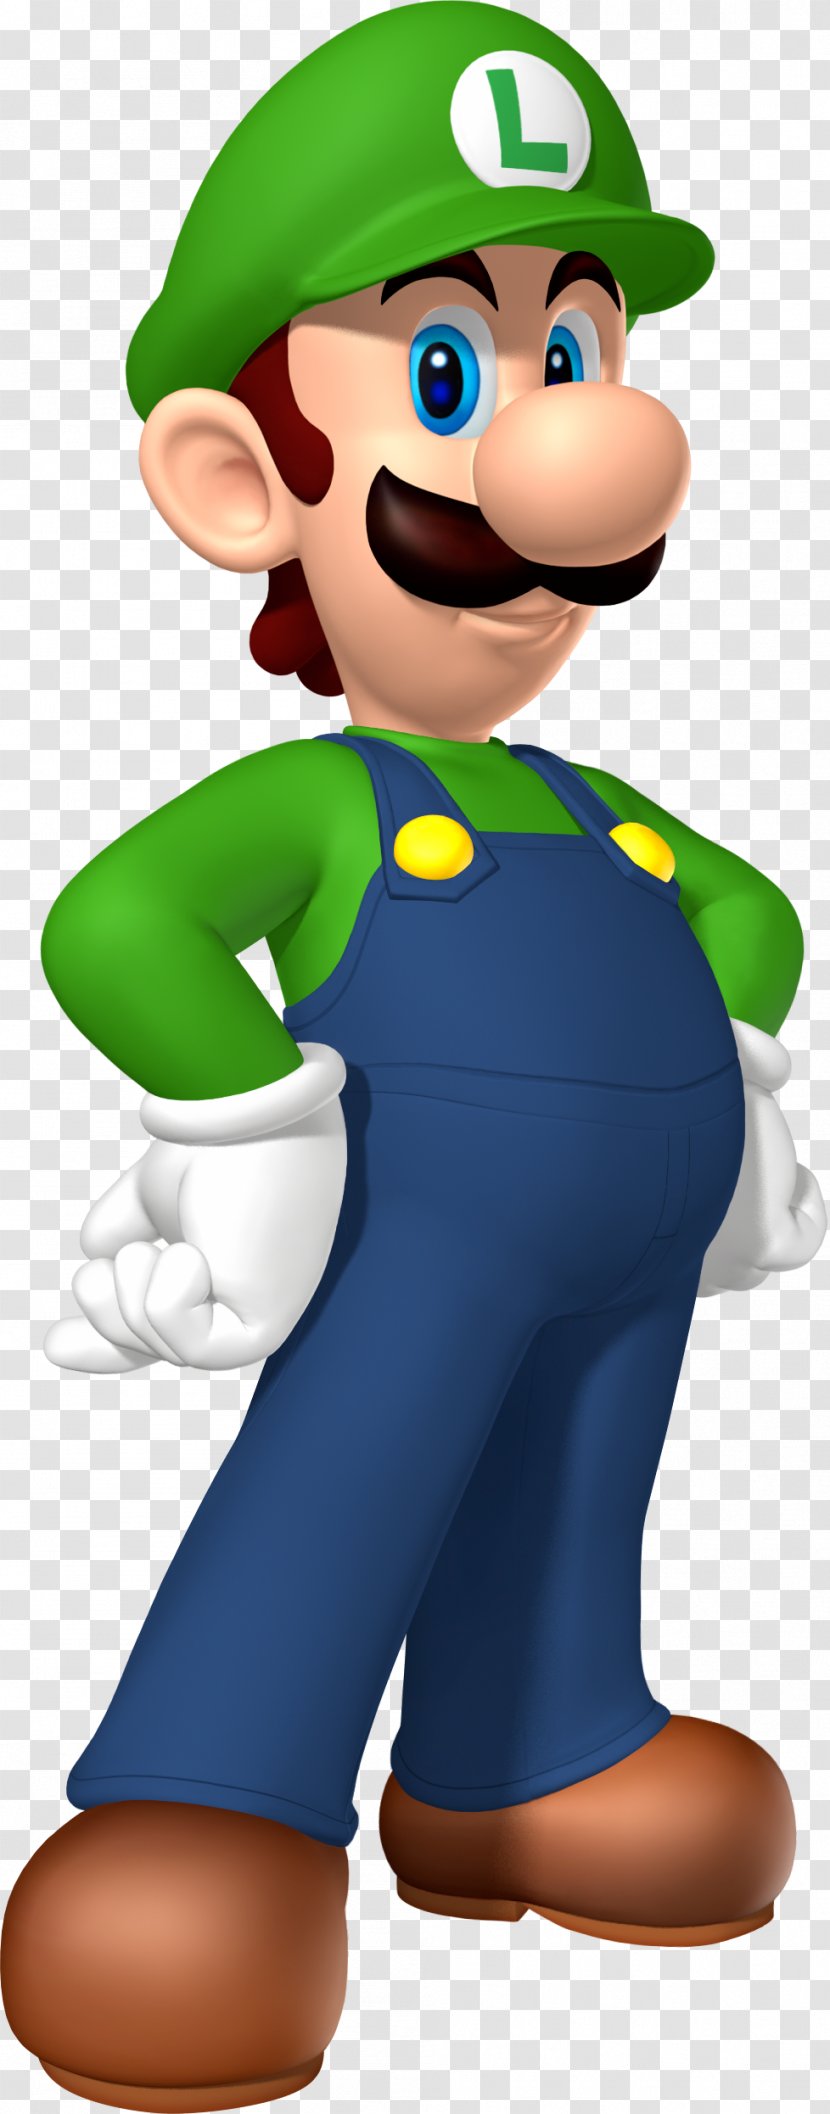 New Super Mario Bros. U Smash For Nintendo 3DS And Wii Luigis Mansion 2 - Mascot - Luigi Image Transparent PNG